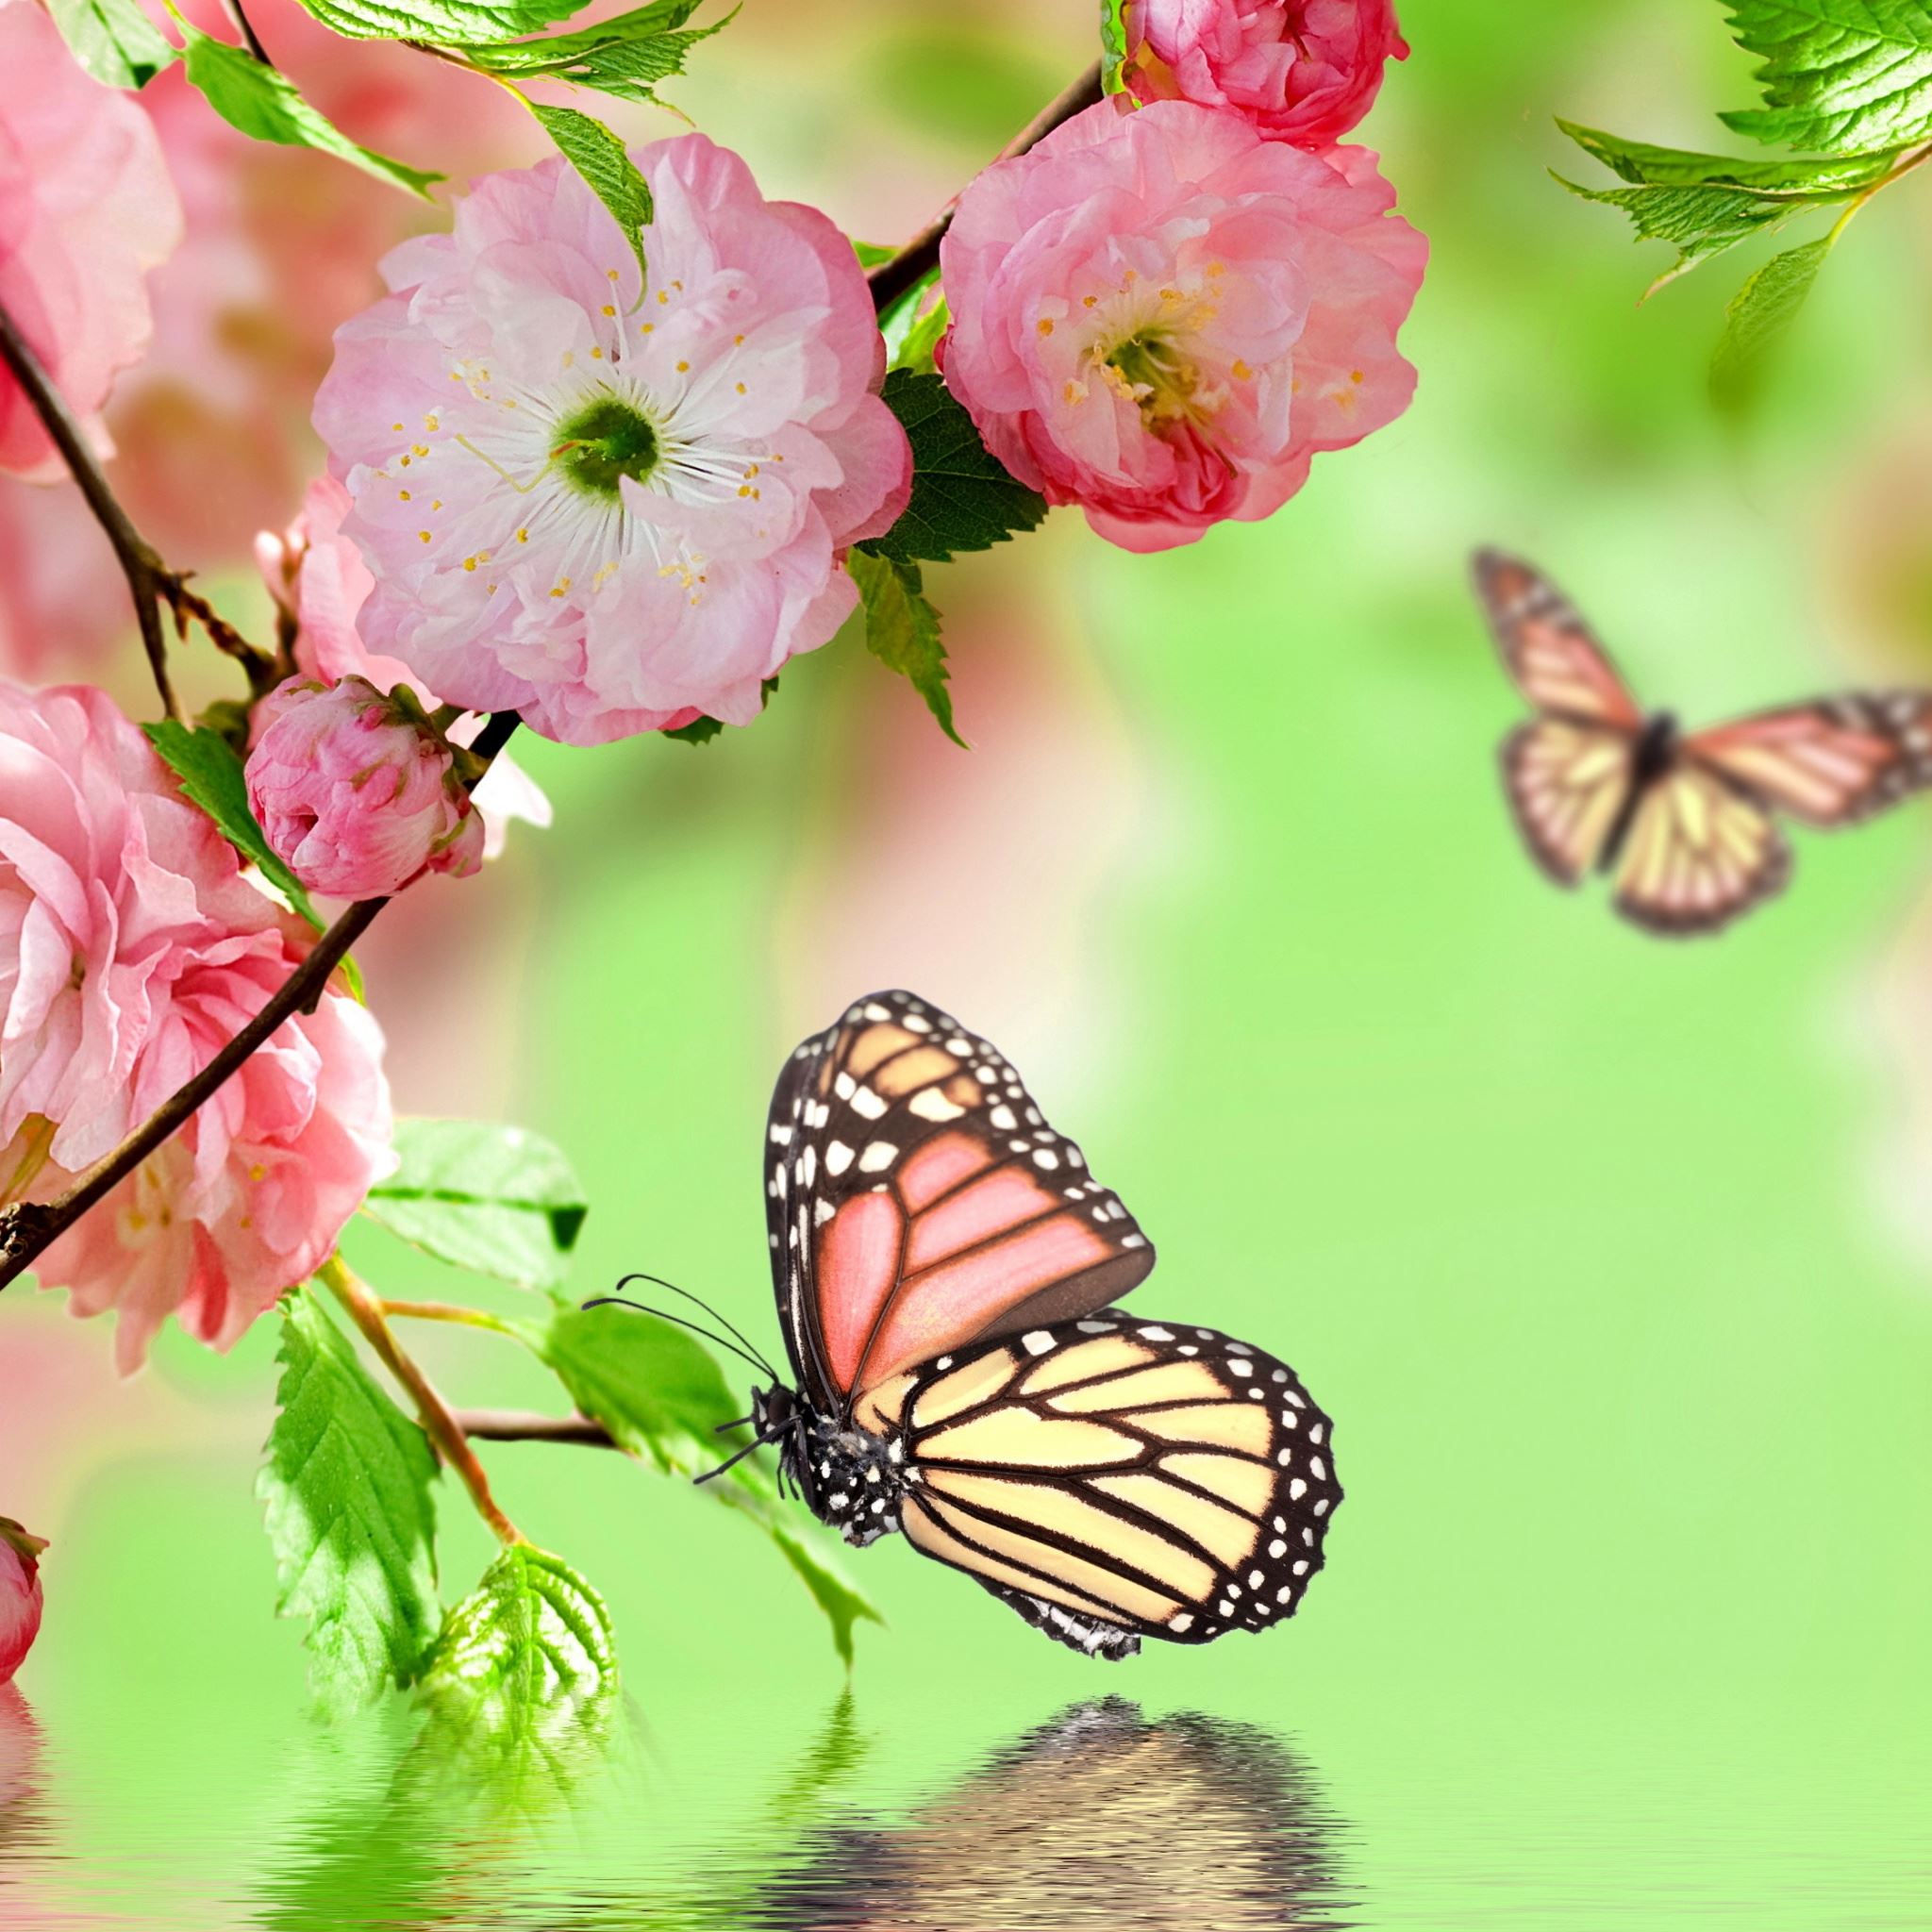 Springtime Joy iPad Air wallpaper 